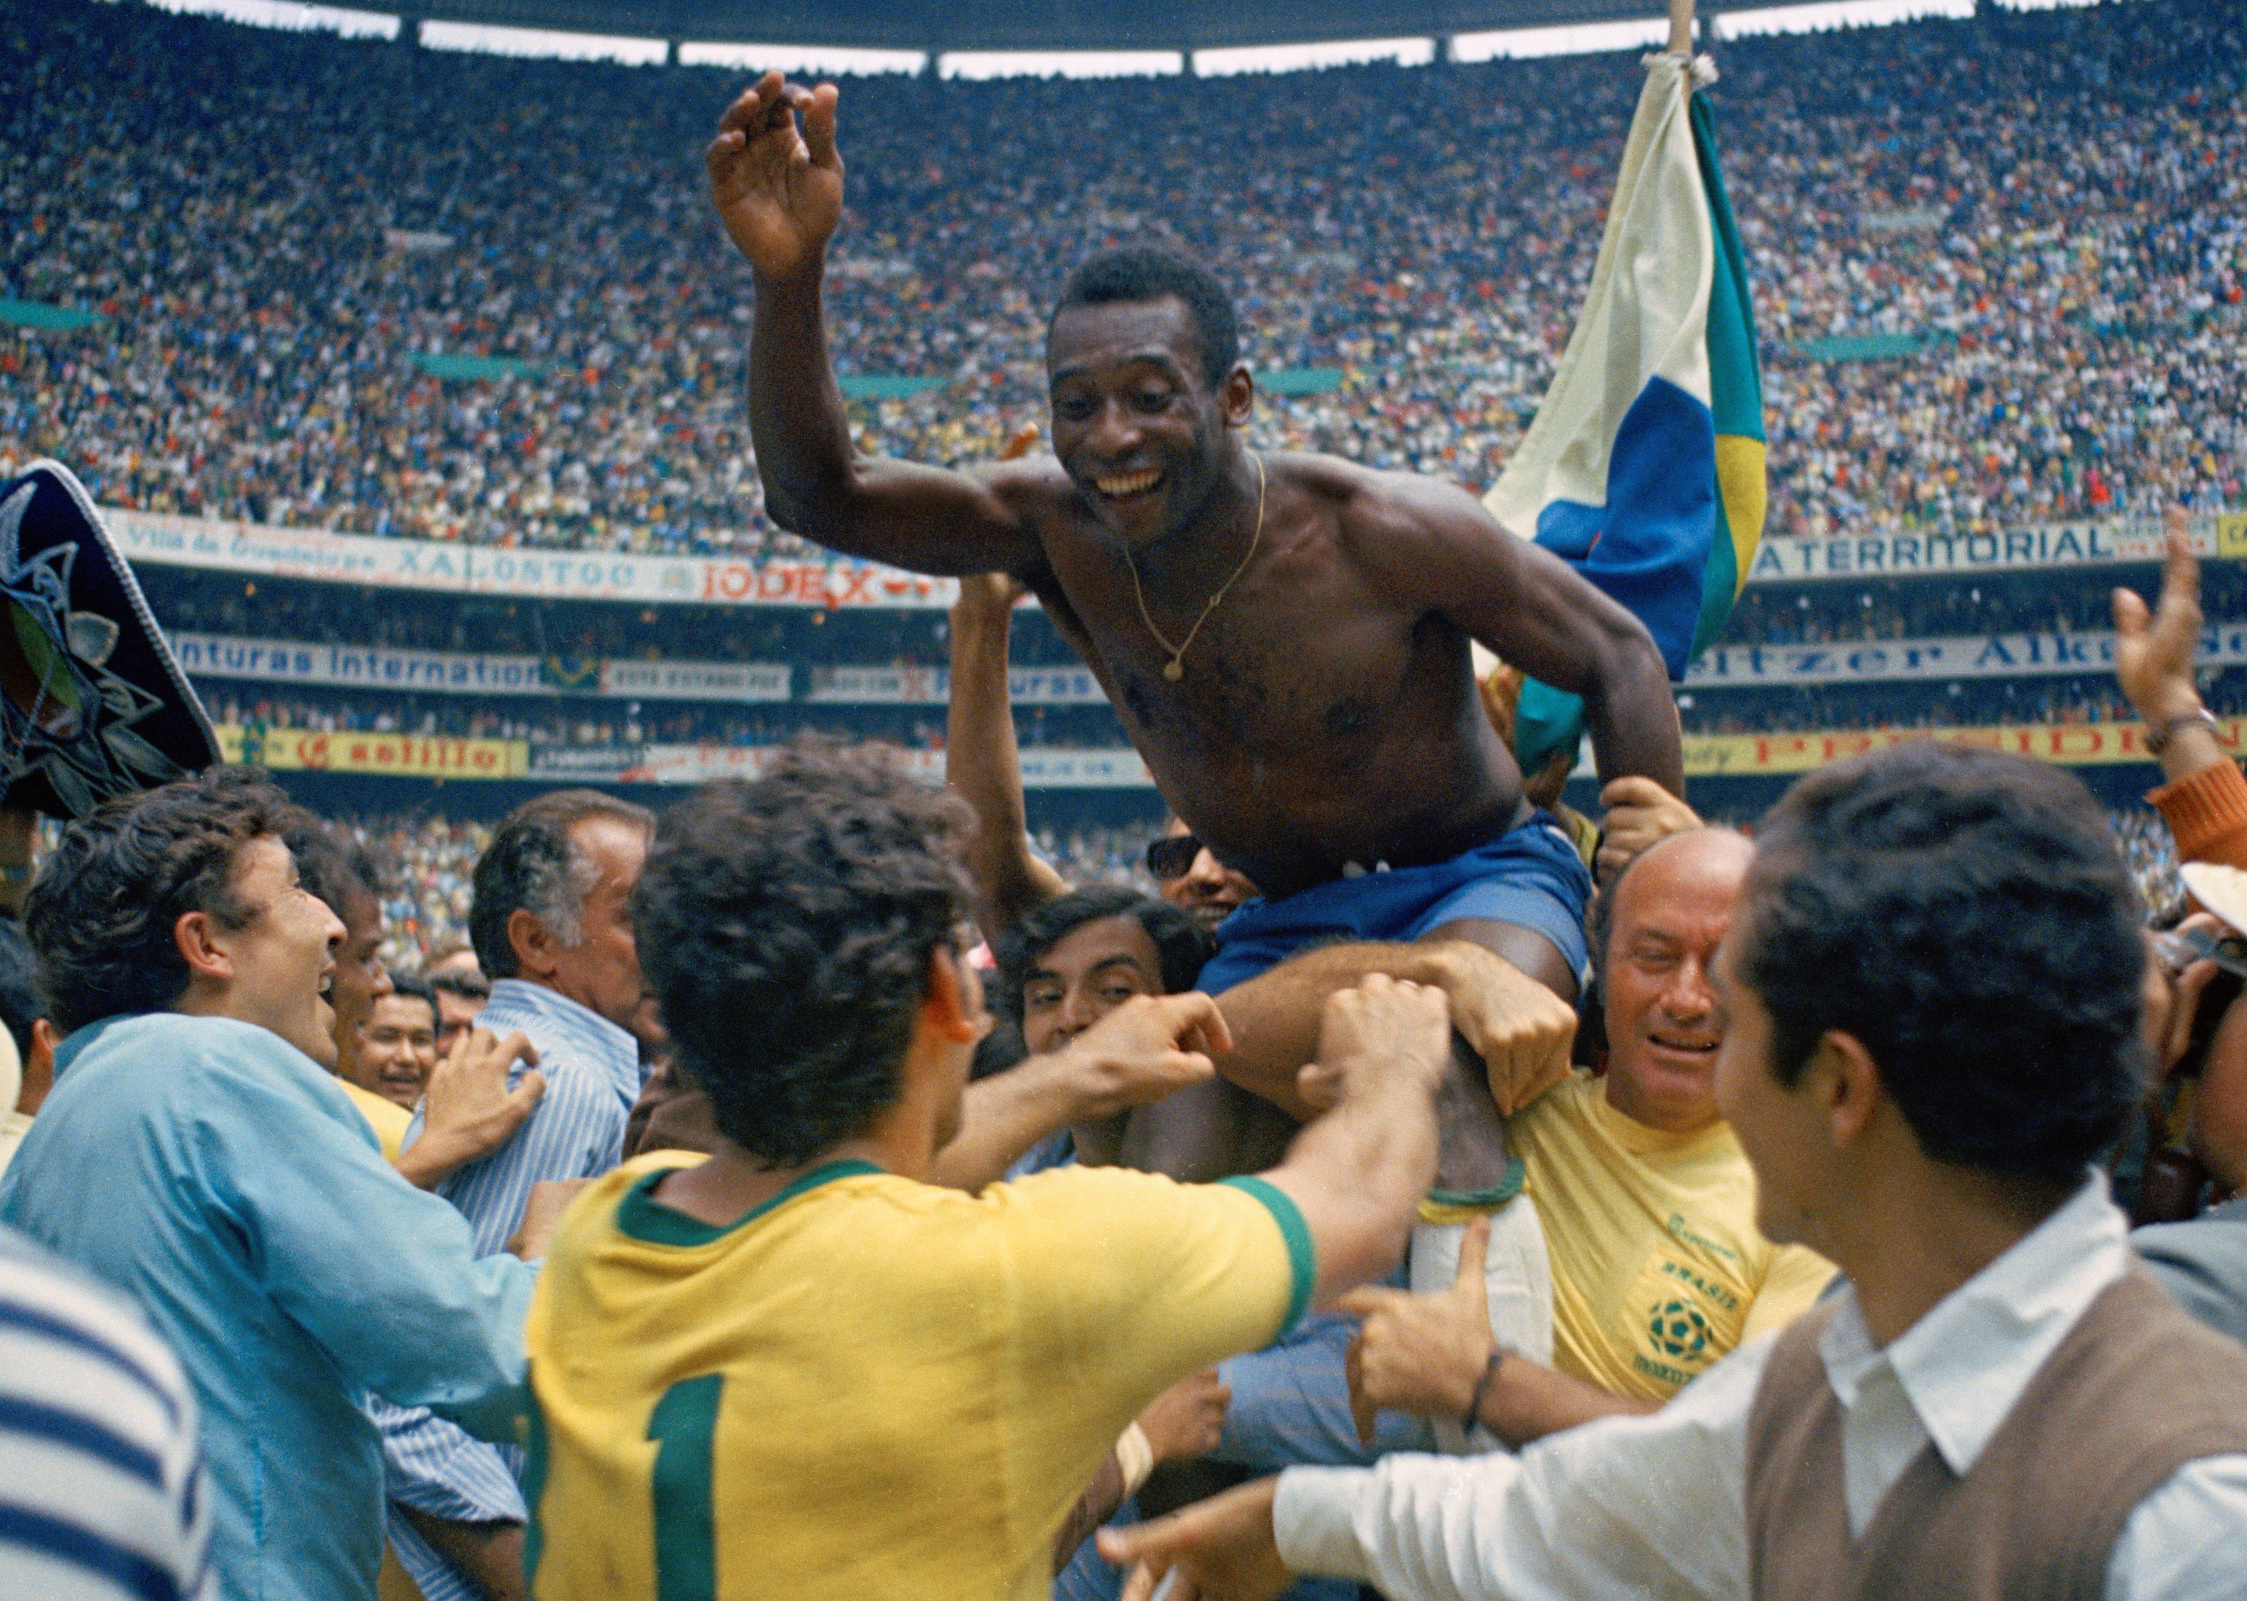 Anfallare: Pelé, Brasilien. Var aktiv mellan 1956 och 1977. Vann VM tre gånger (!) och har blivit utsedd till både århundradets bäste idrottare och fotbollspelare. 